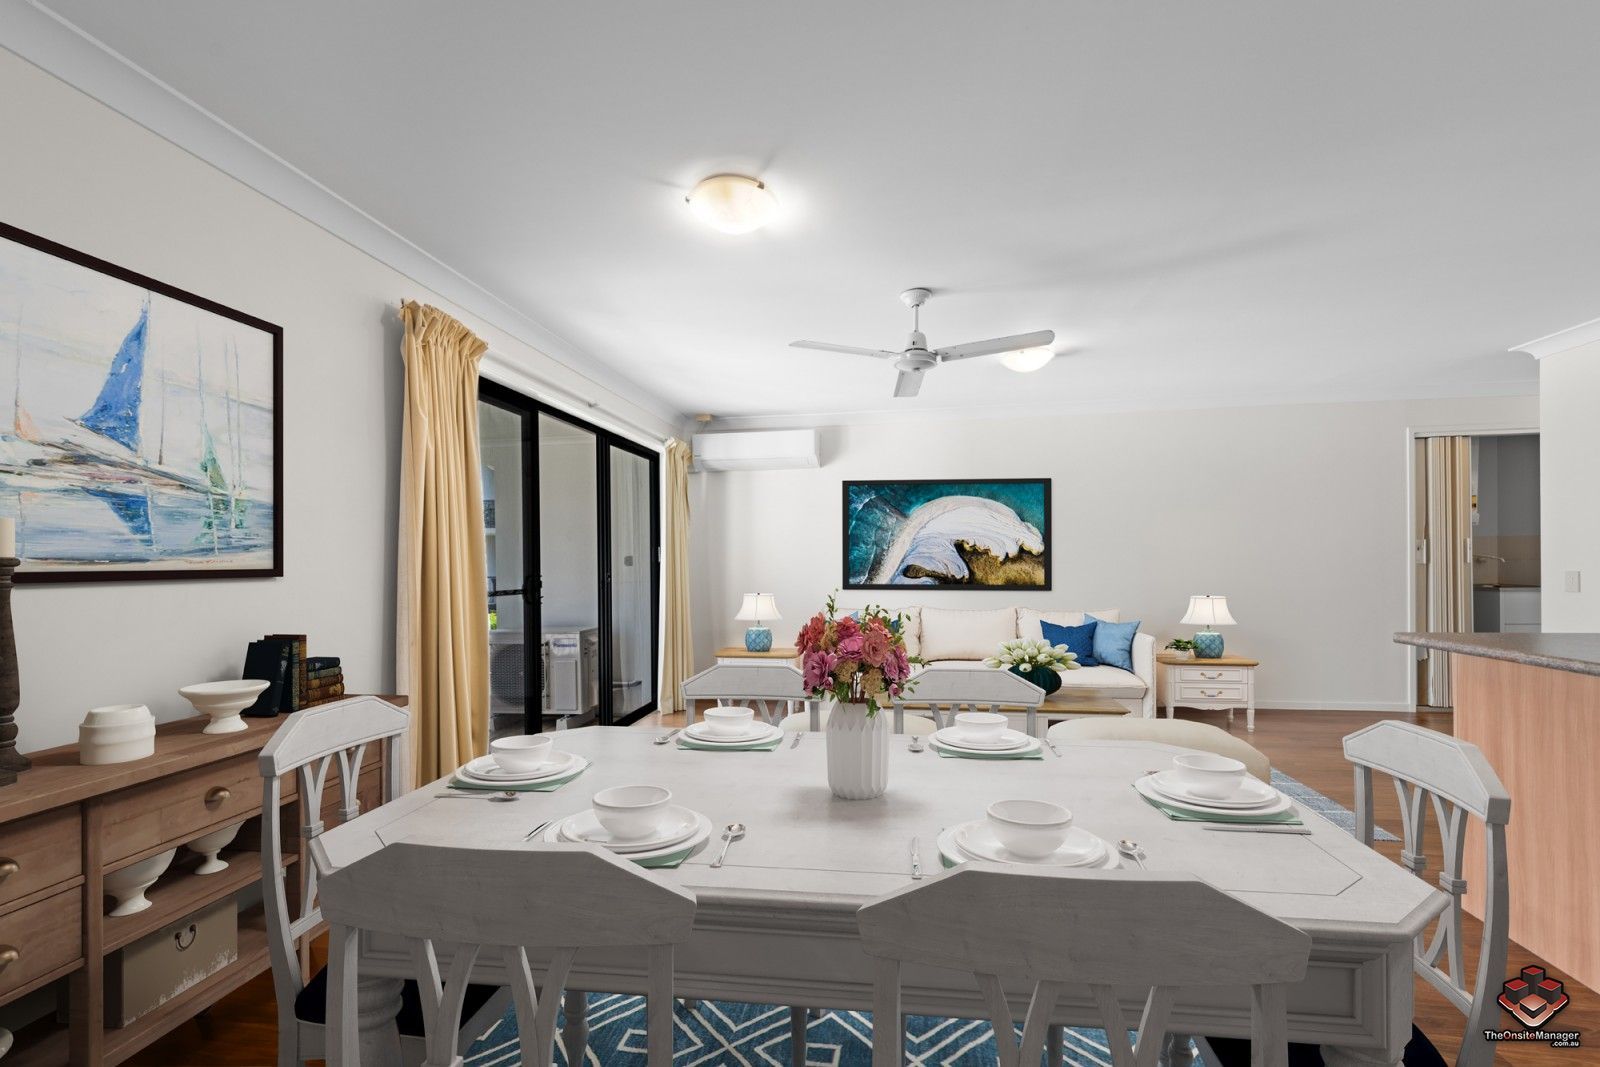 2 bedrooms Apartment / Unit / Flat in ID:21128661/52 Newstead Terrace NEWSTEAD QLD, 4006